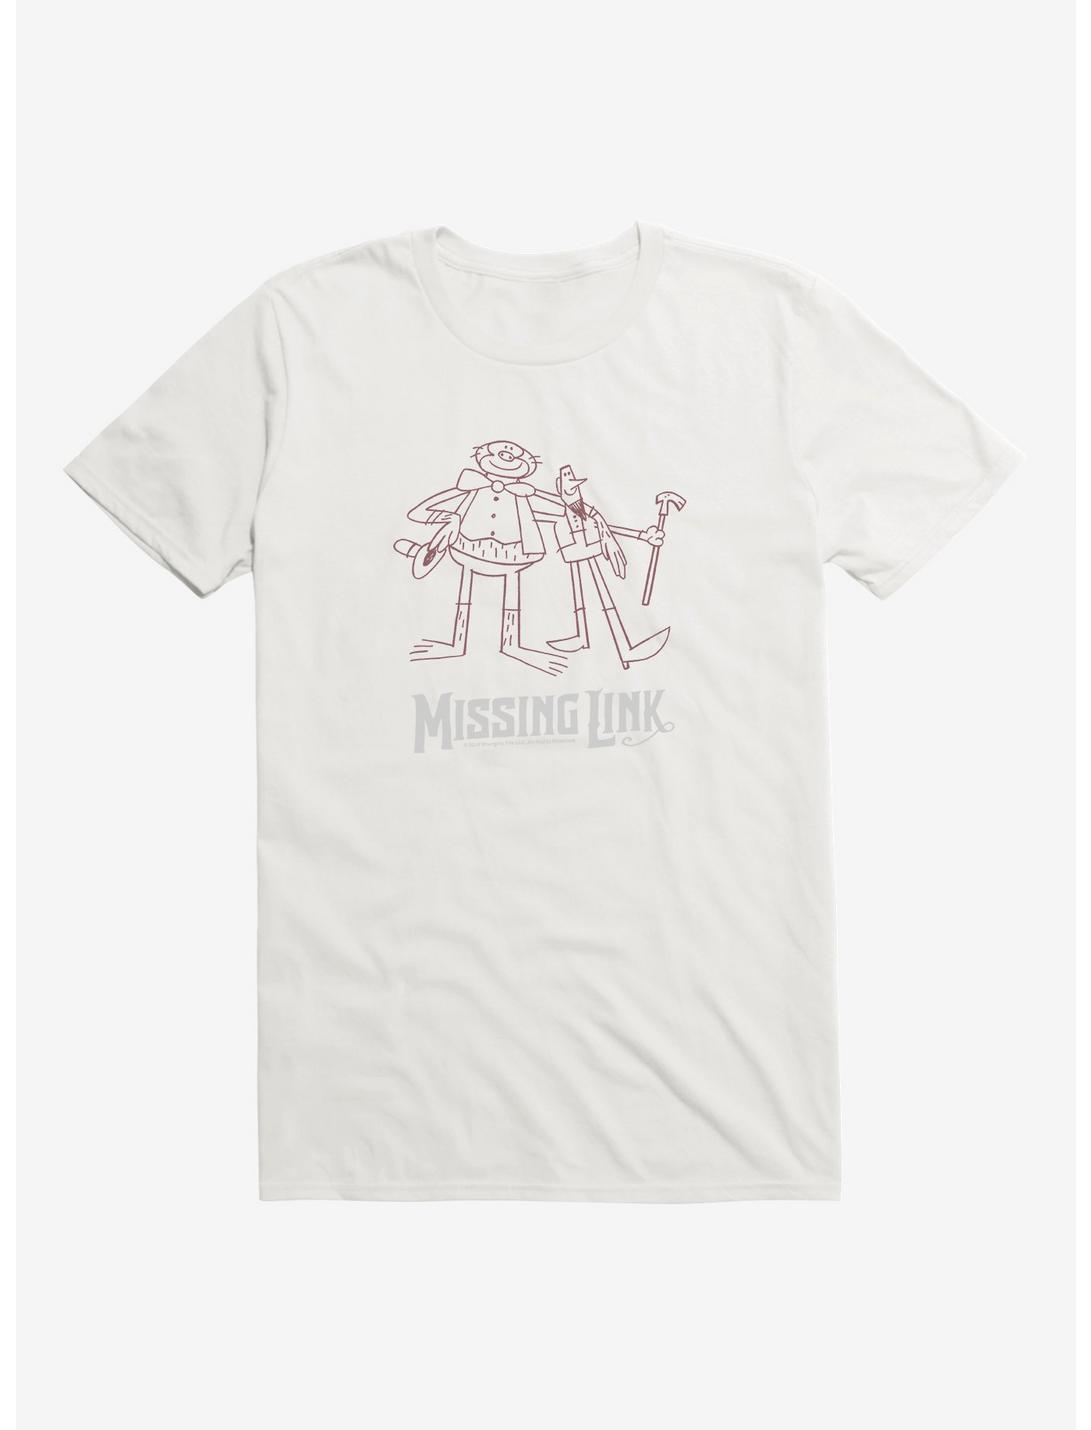 Missing Link Sketch T-Shirt, , hi-res